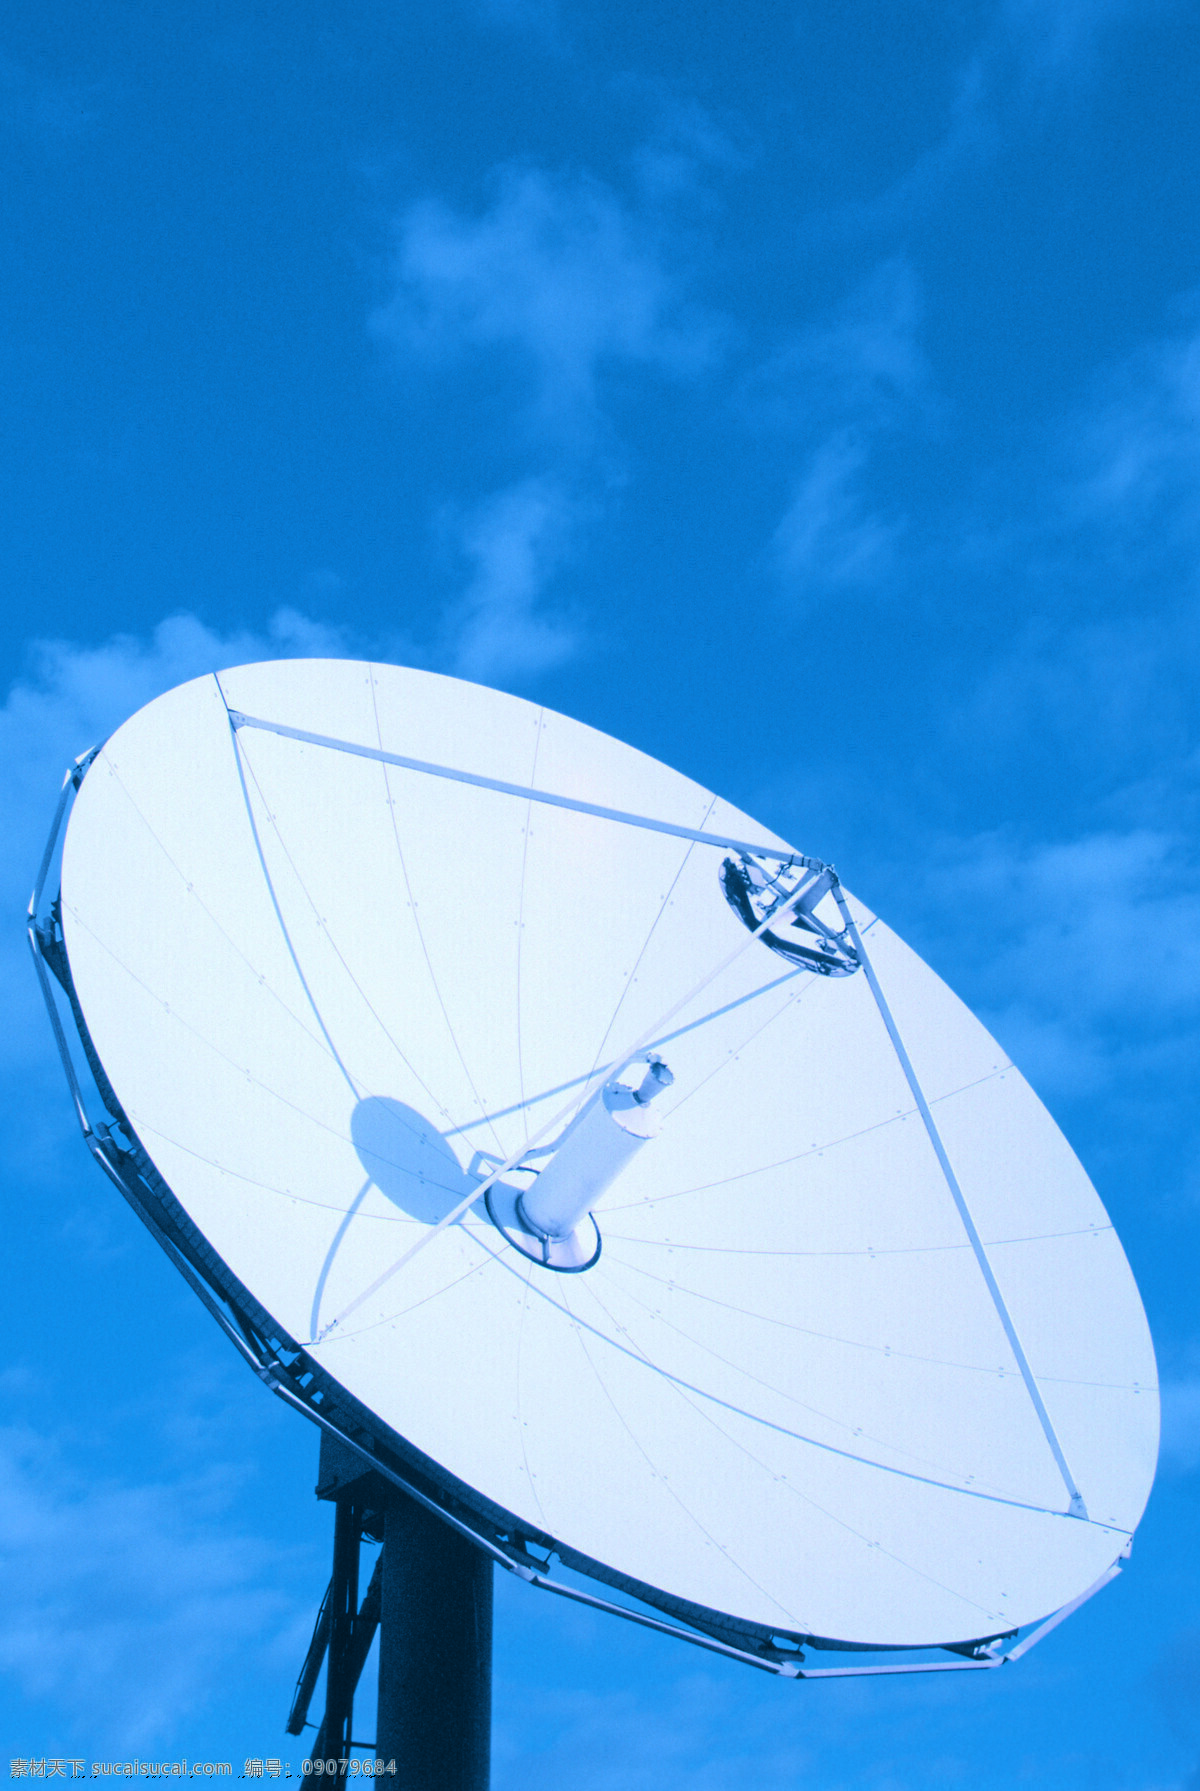 通讯设备9 通讯设备 天线 信号 现代科技 工业生产 摄影图库